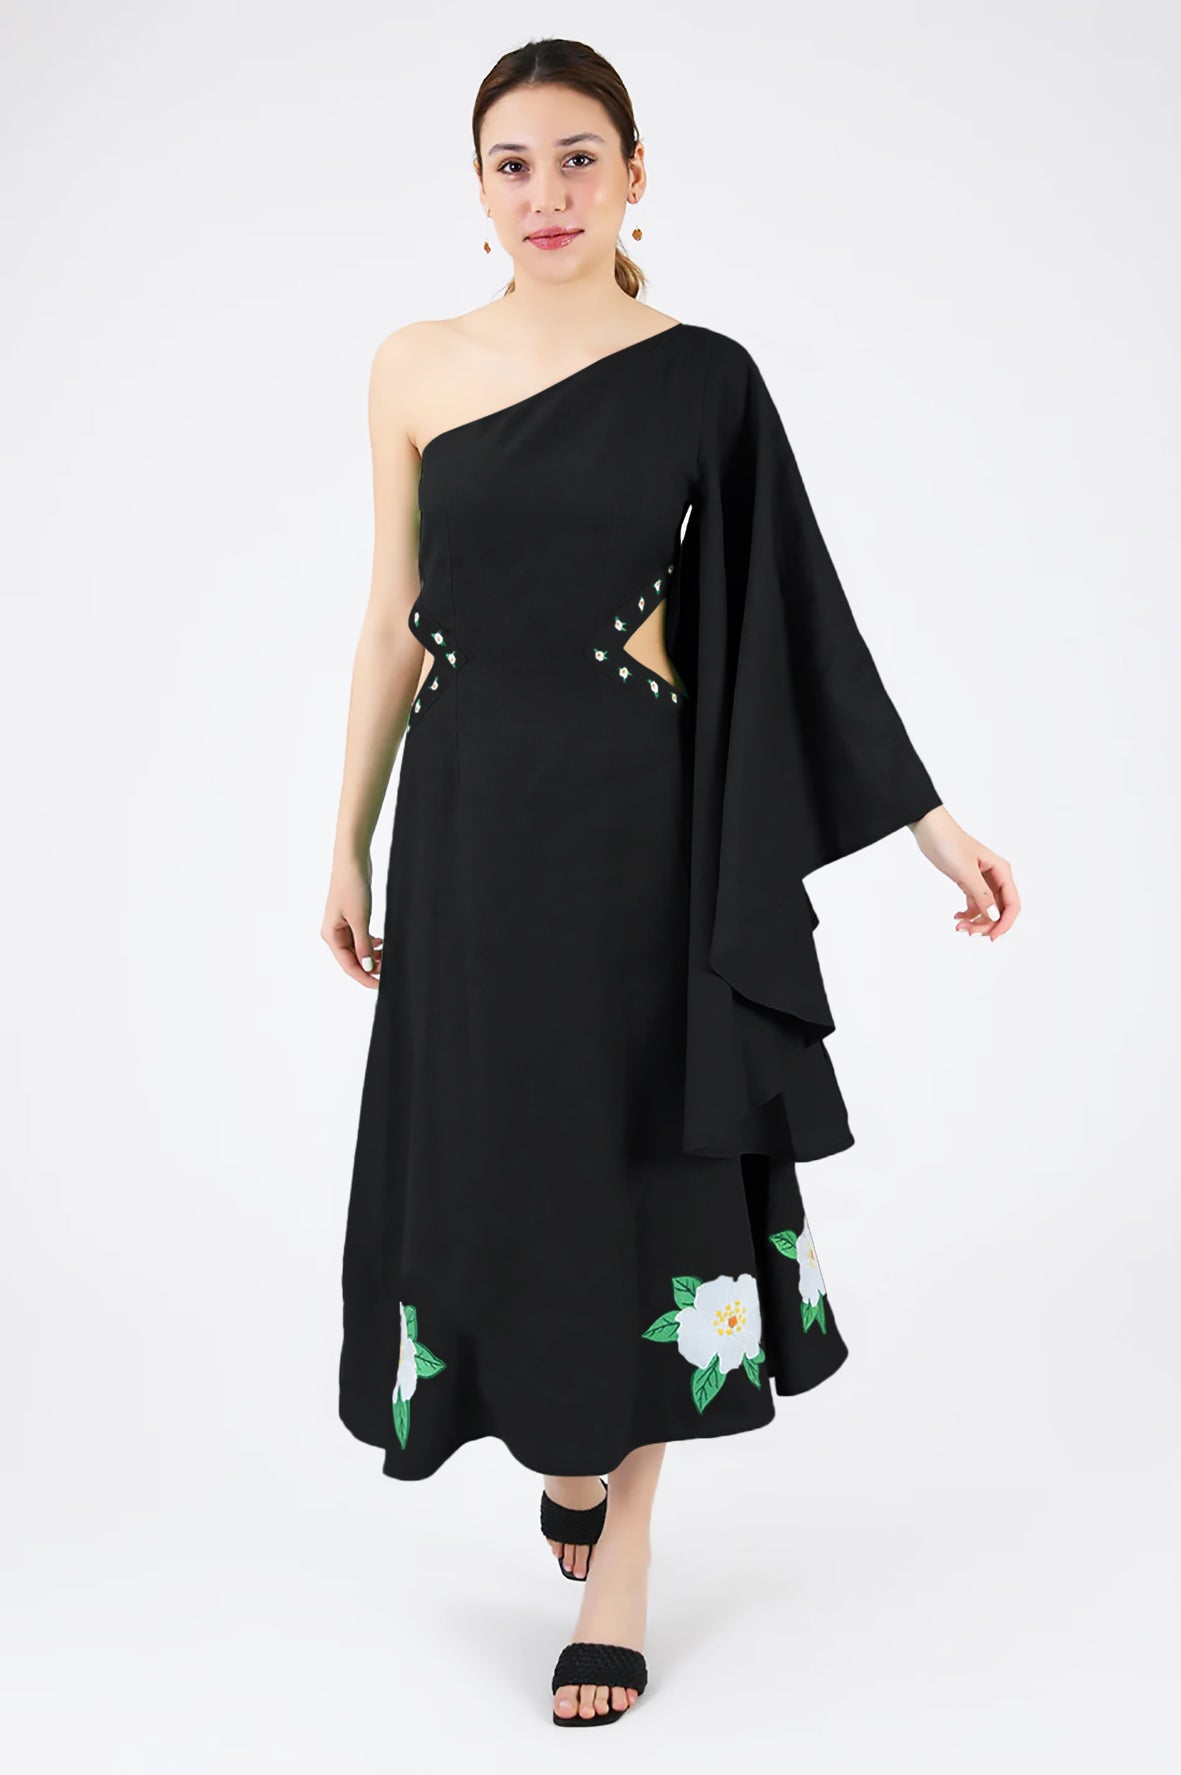 Narma Dress (Wanga Collection) in Black